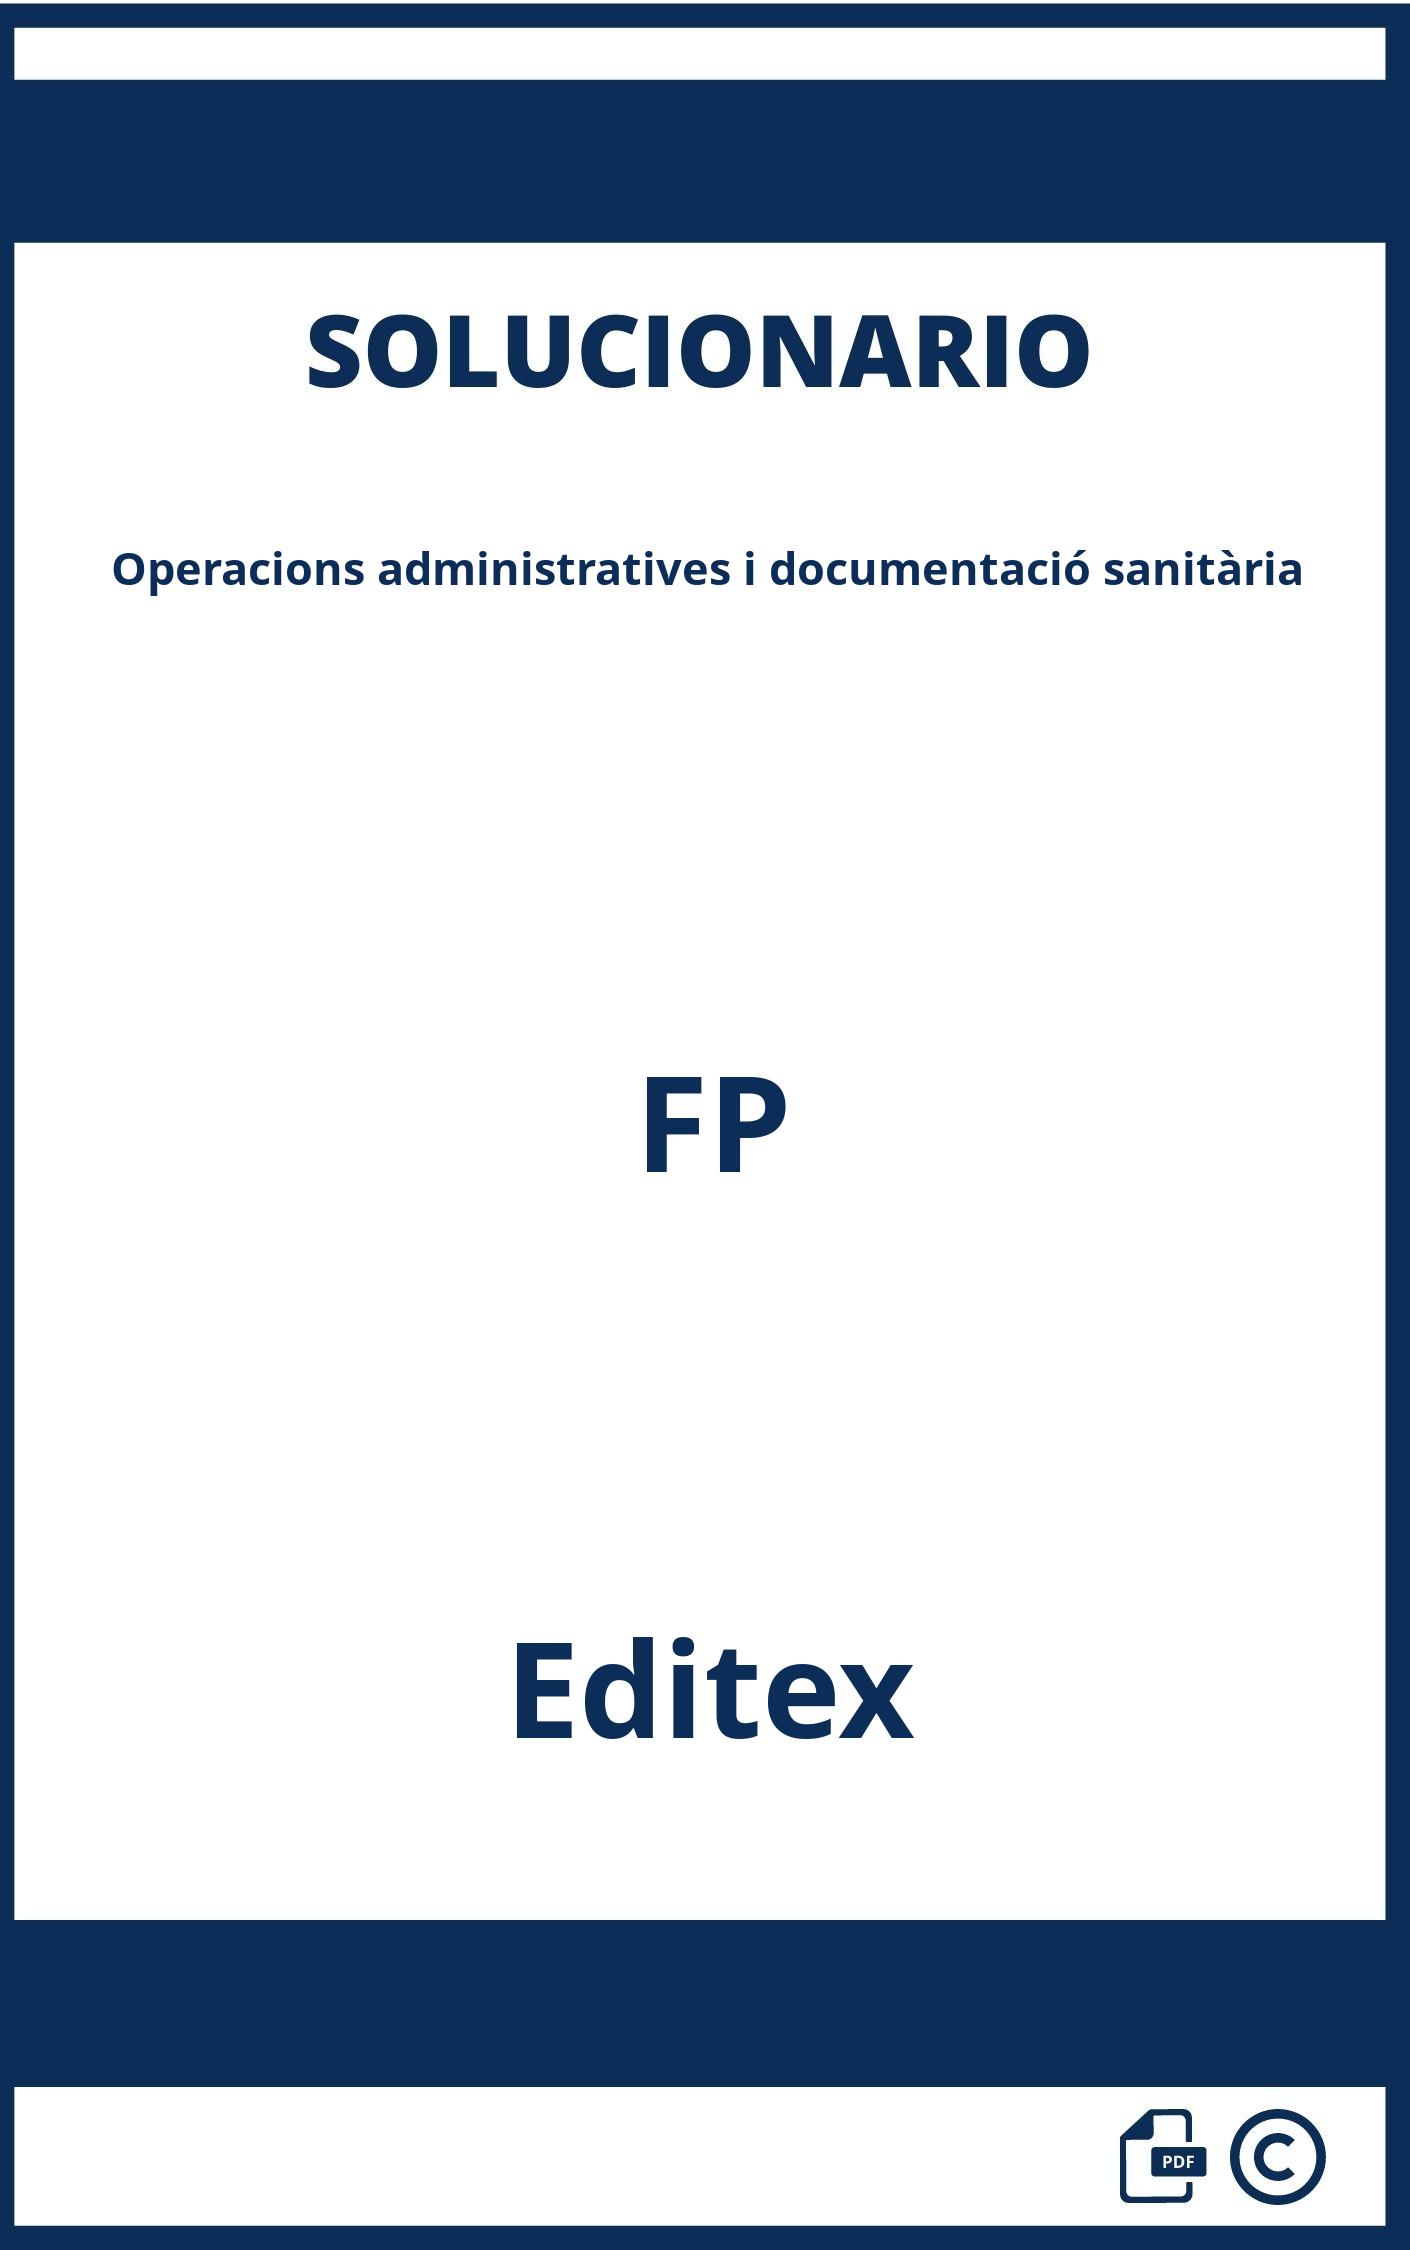 Solucionario Operacions administratives i documentació sanitària FP Editex